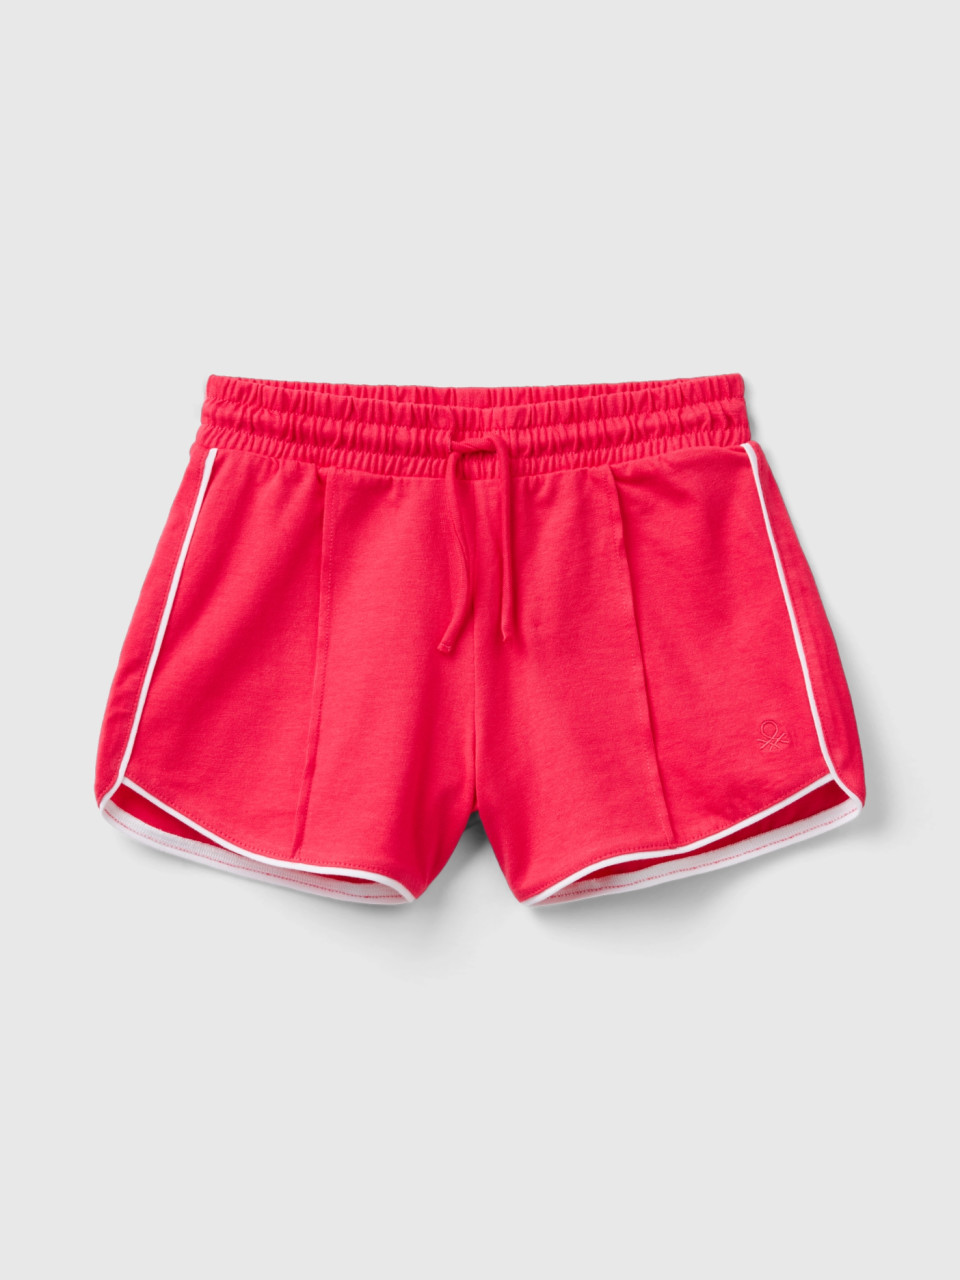 Benetton, 100% Cotton Shorts With Drawstring, Fuchsia, Kids